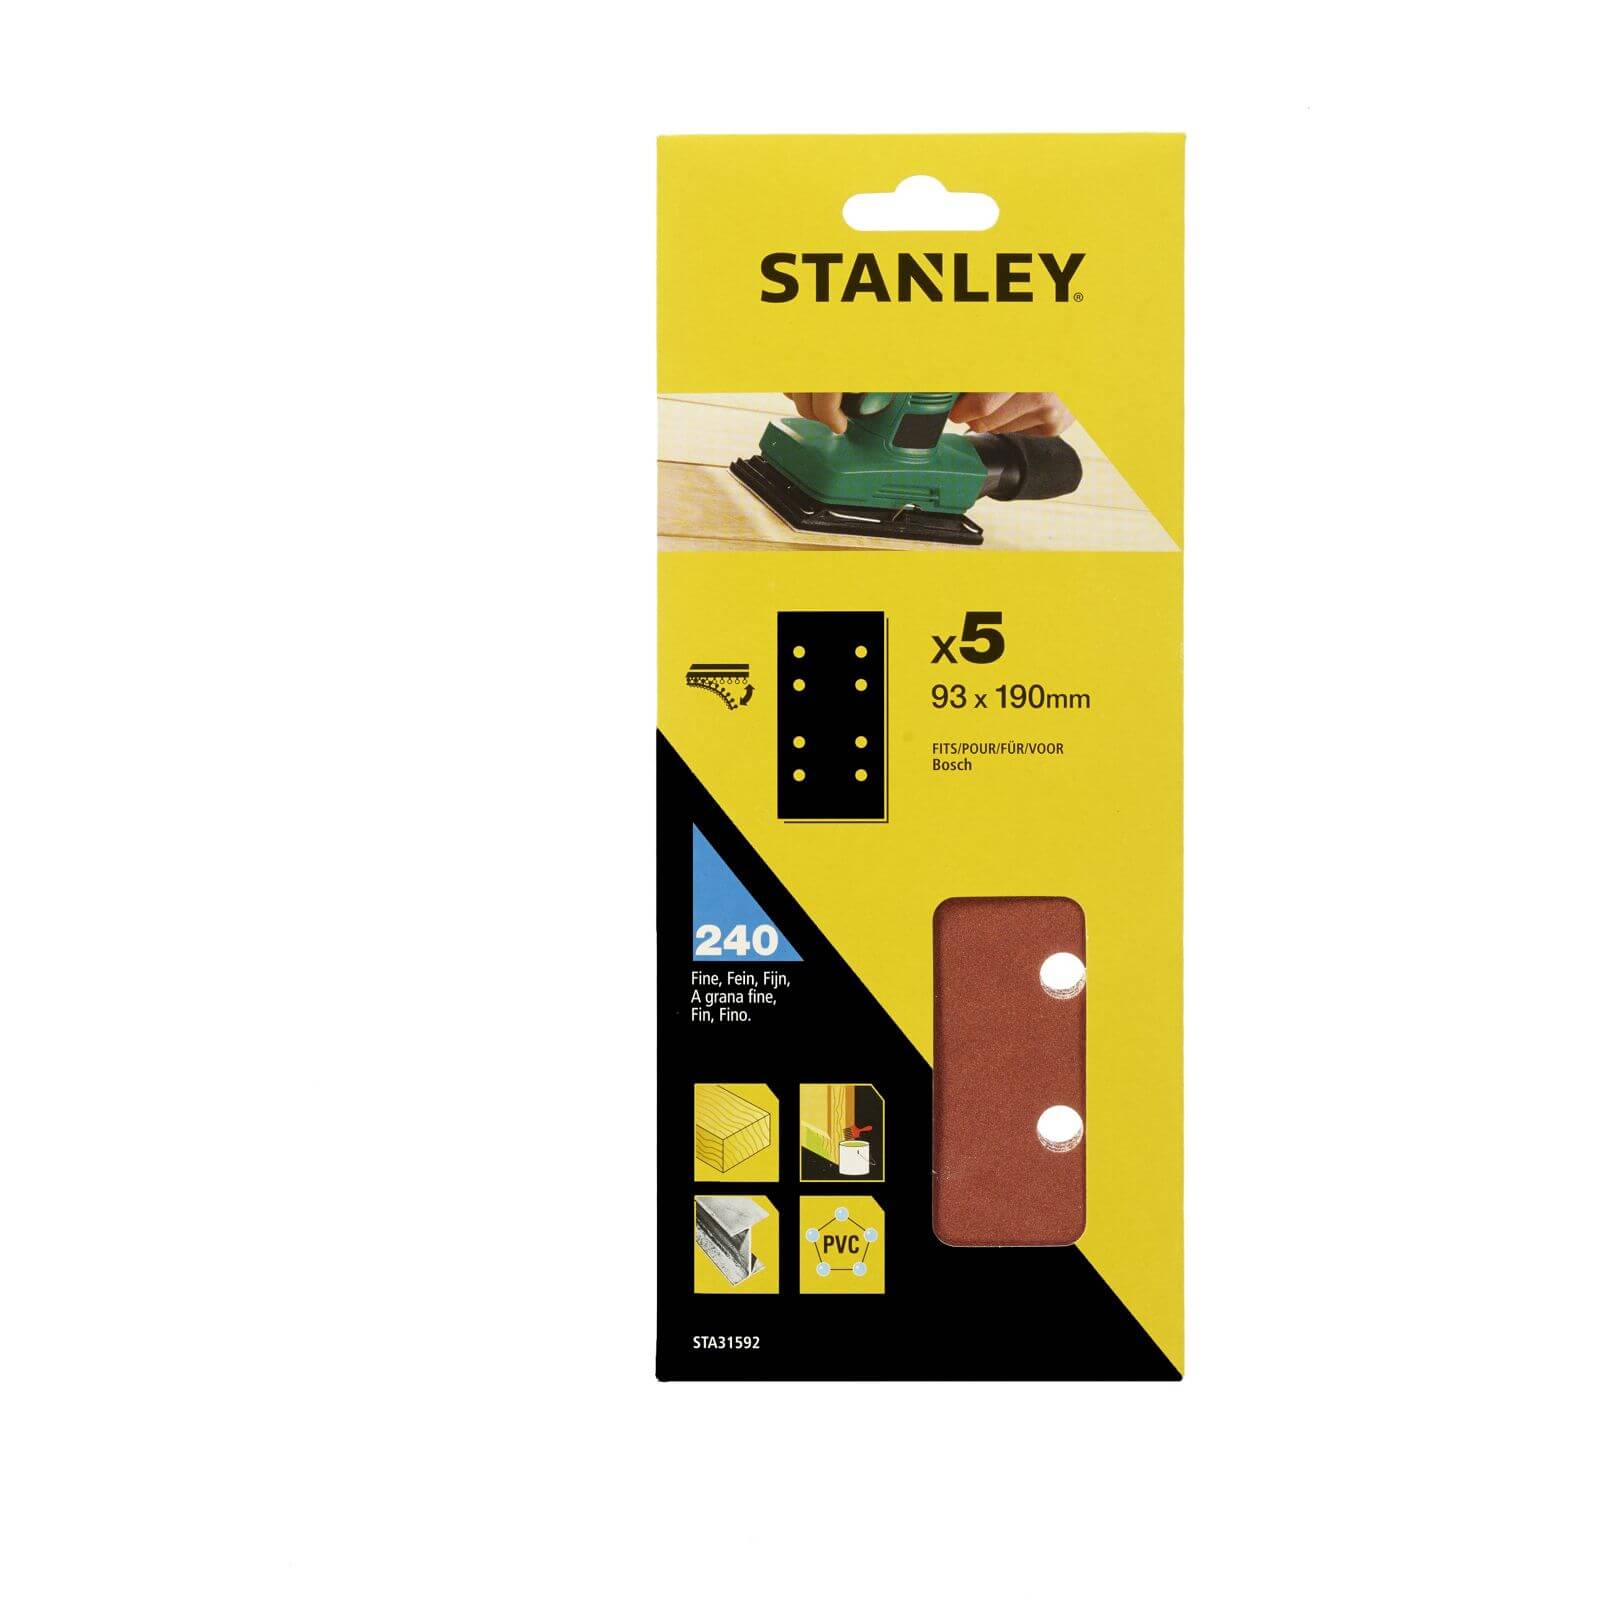 Photo of Stanley 1/3 Sheet Sander 240g Hook & Loop Sanding Sheets - Sta31592-xj